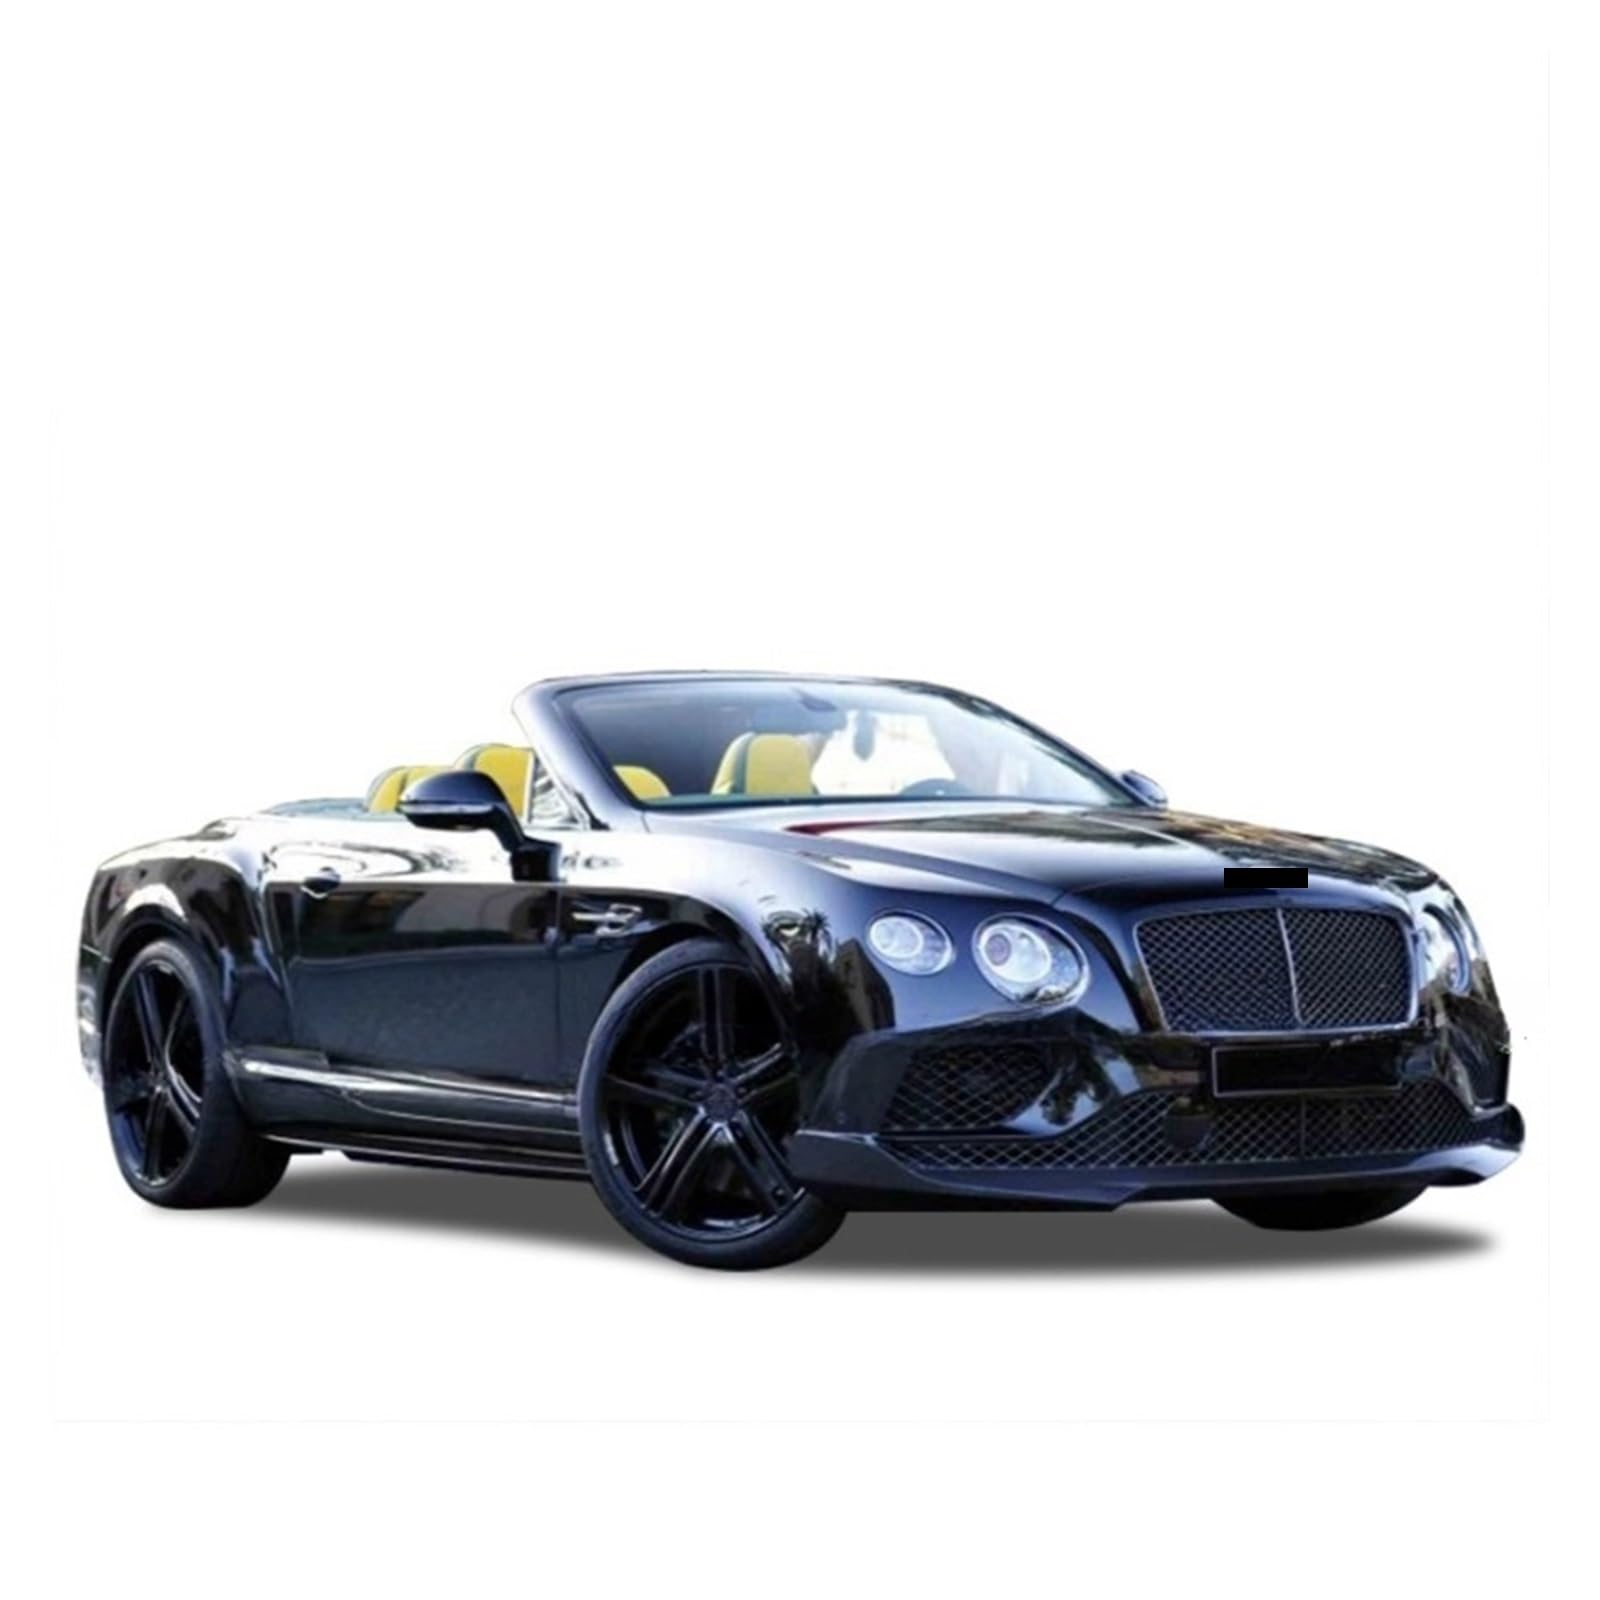 Carbon Fiber Car Body Kits Frontschürze Stoßstange Hinten Seitenschweller Heckflügel Spoiler Kompatibel for Bentley Continenta GT(Rear lip) von SUCSBOQS